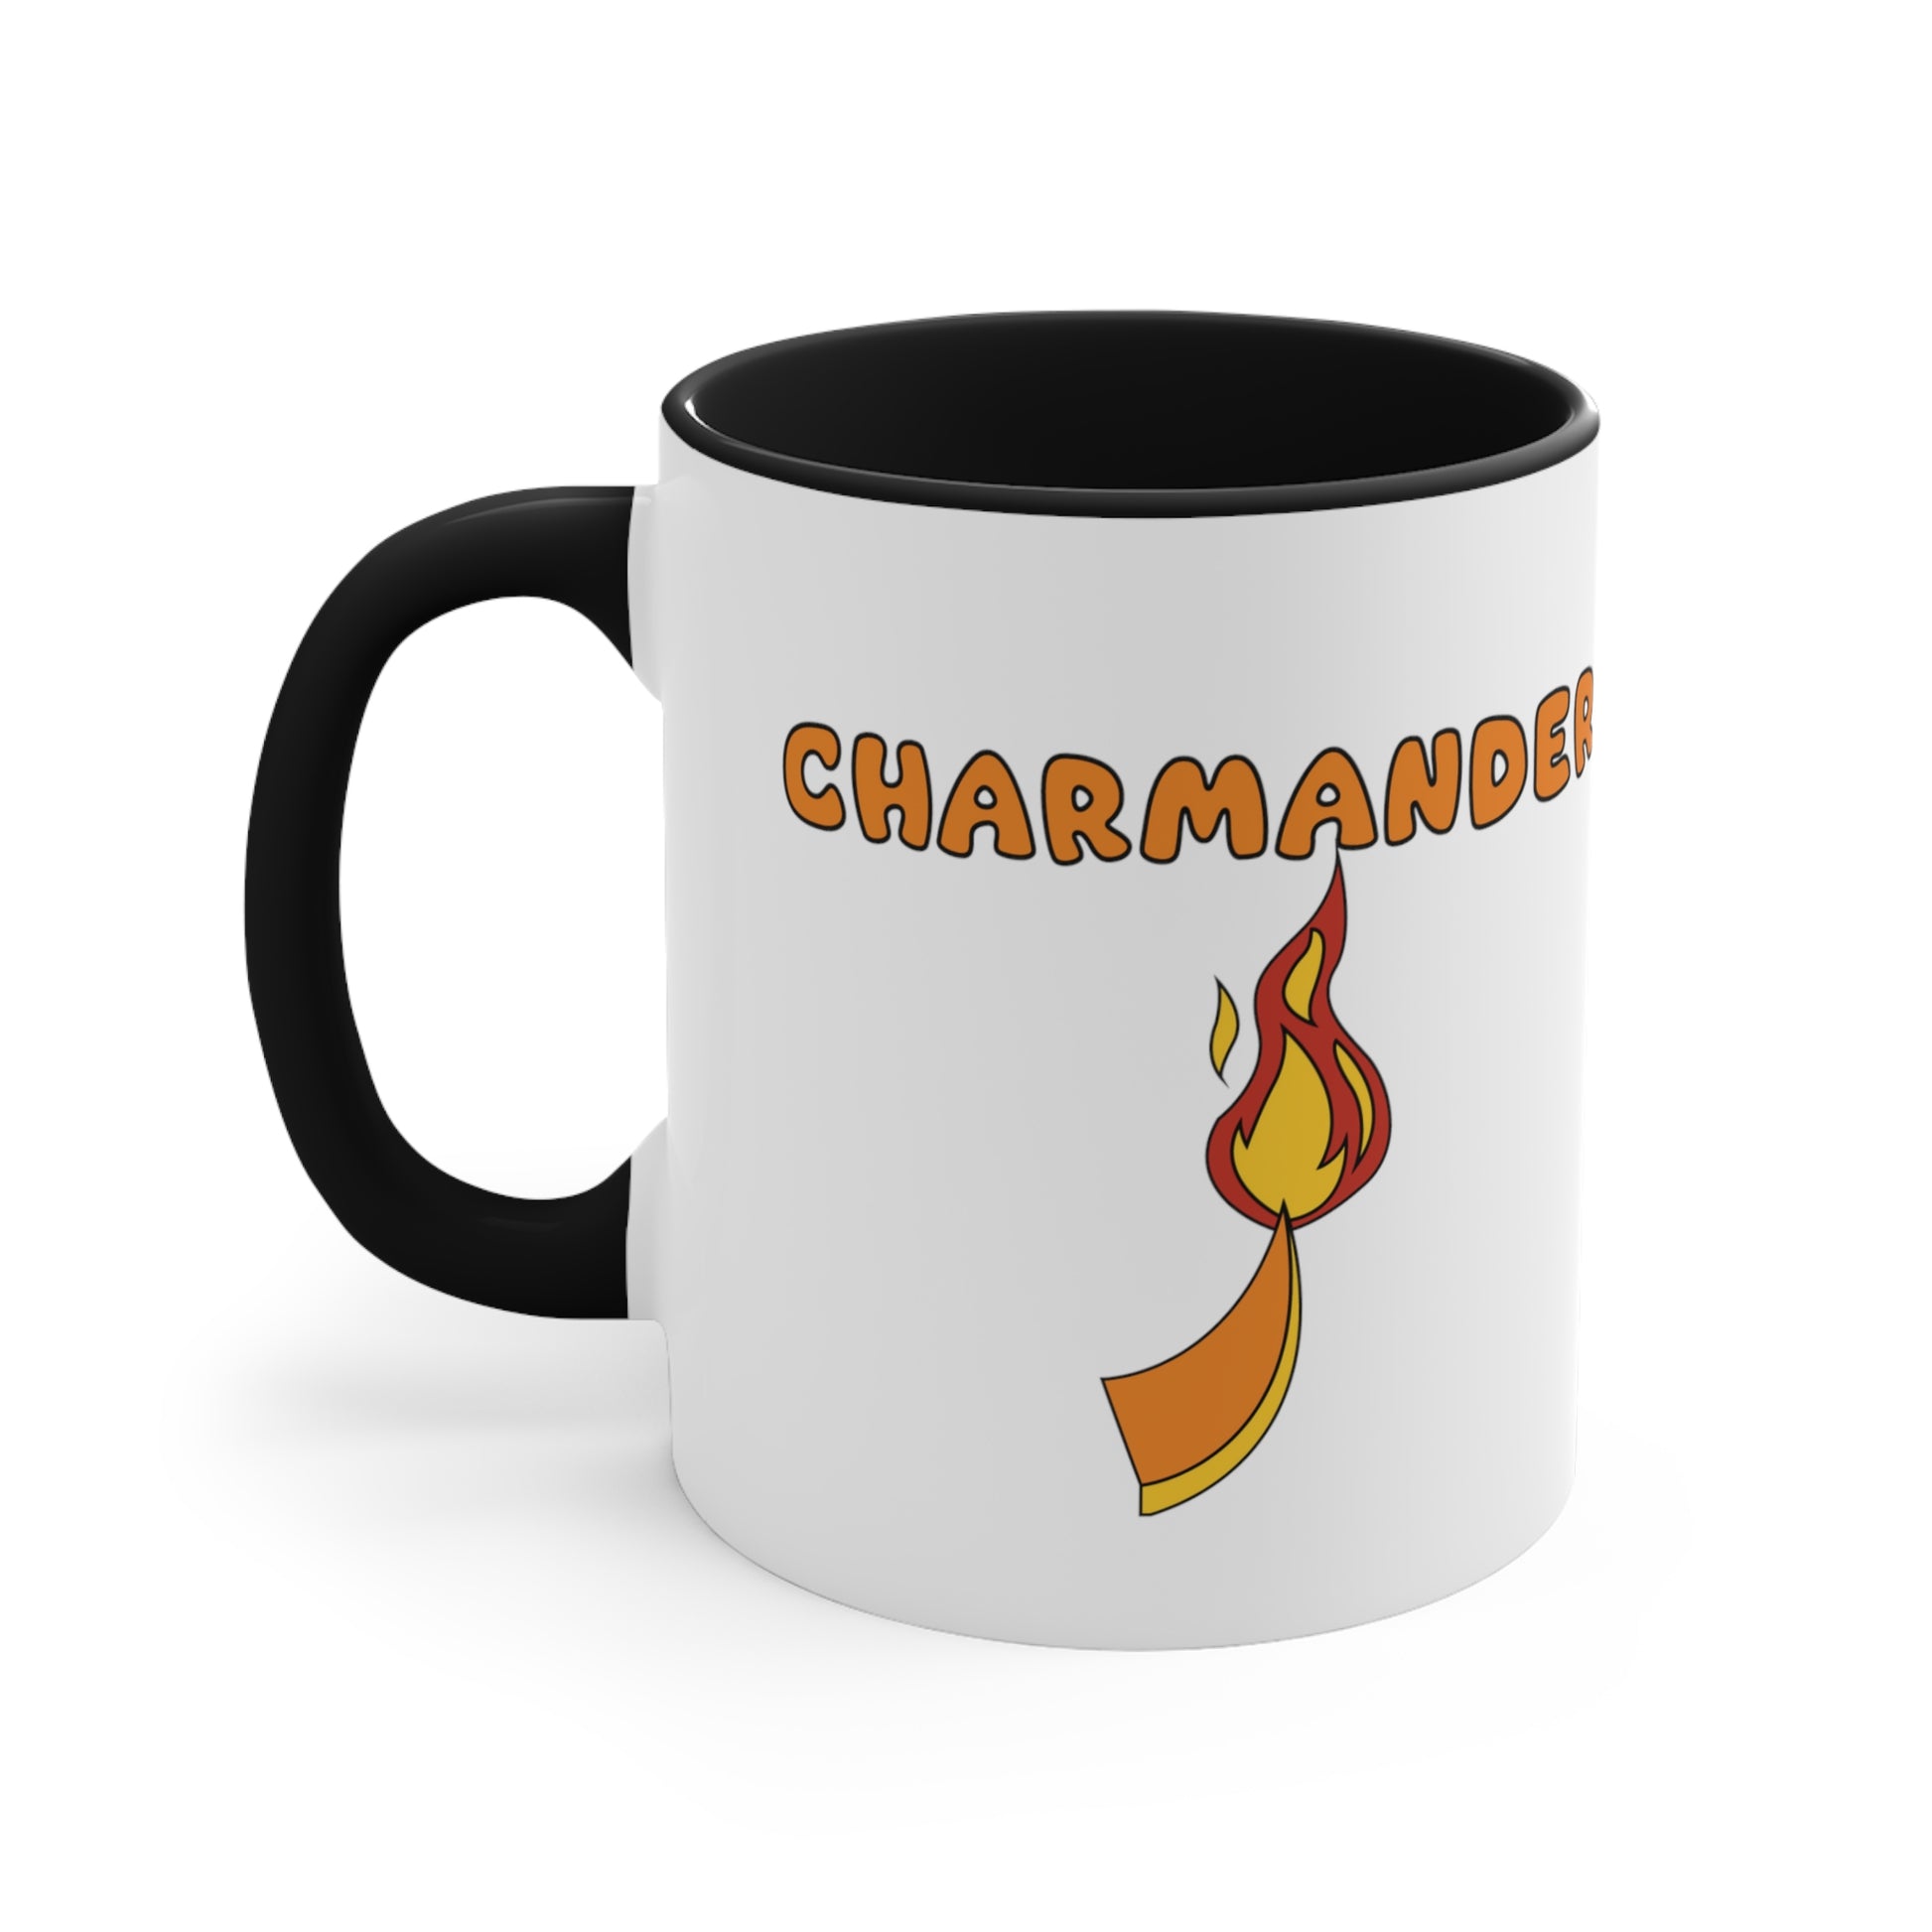 charmander, pokemon, charmander mug, anime merchandise, charmander art, anime mug, anime merchandise, pokemon merch, charmander merch, pokemon mug